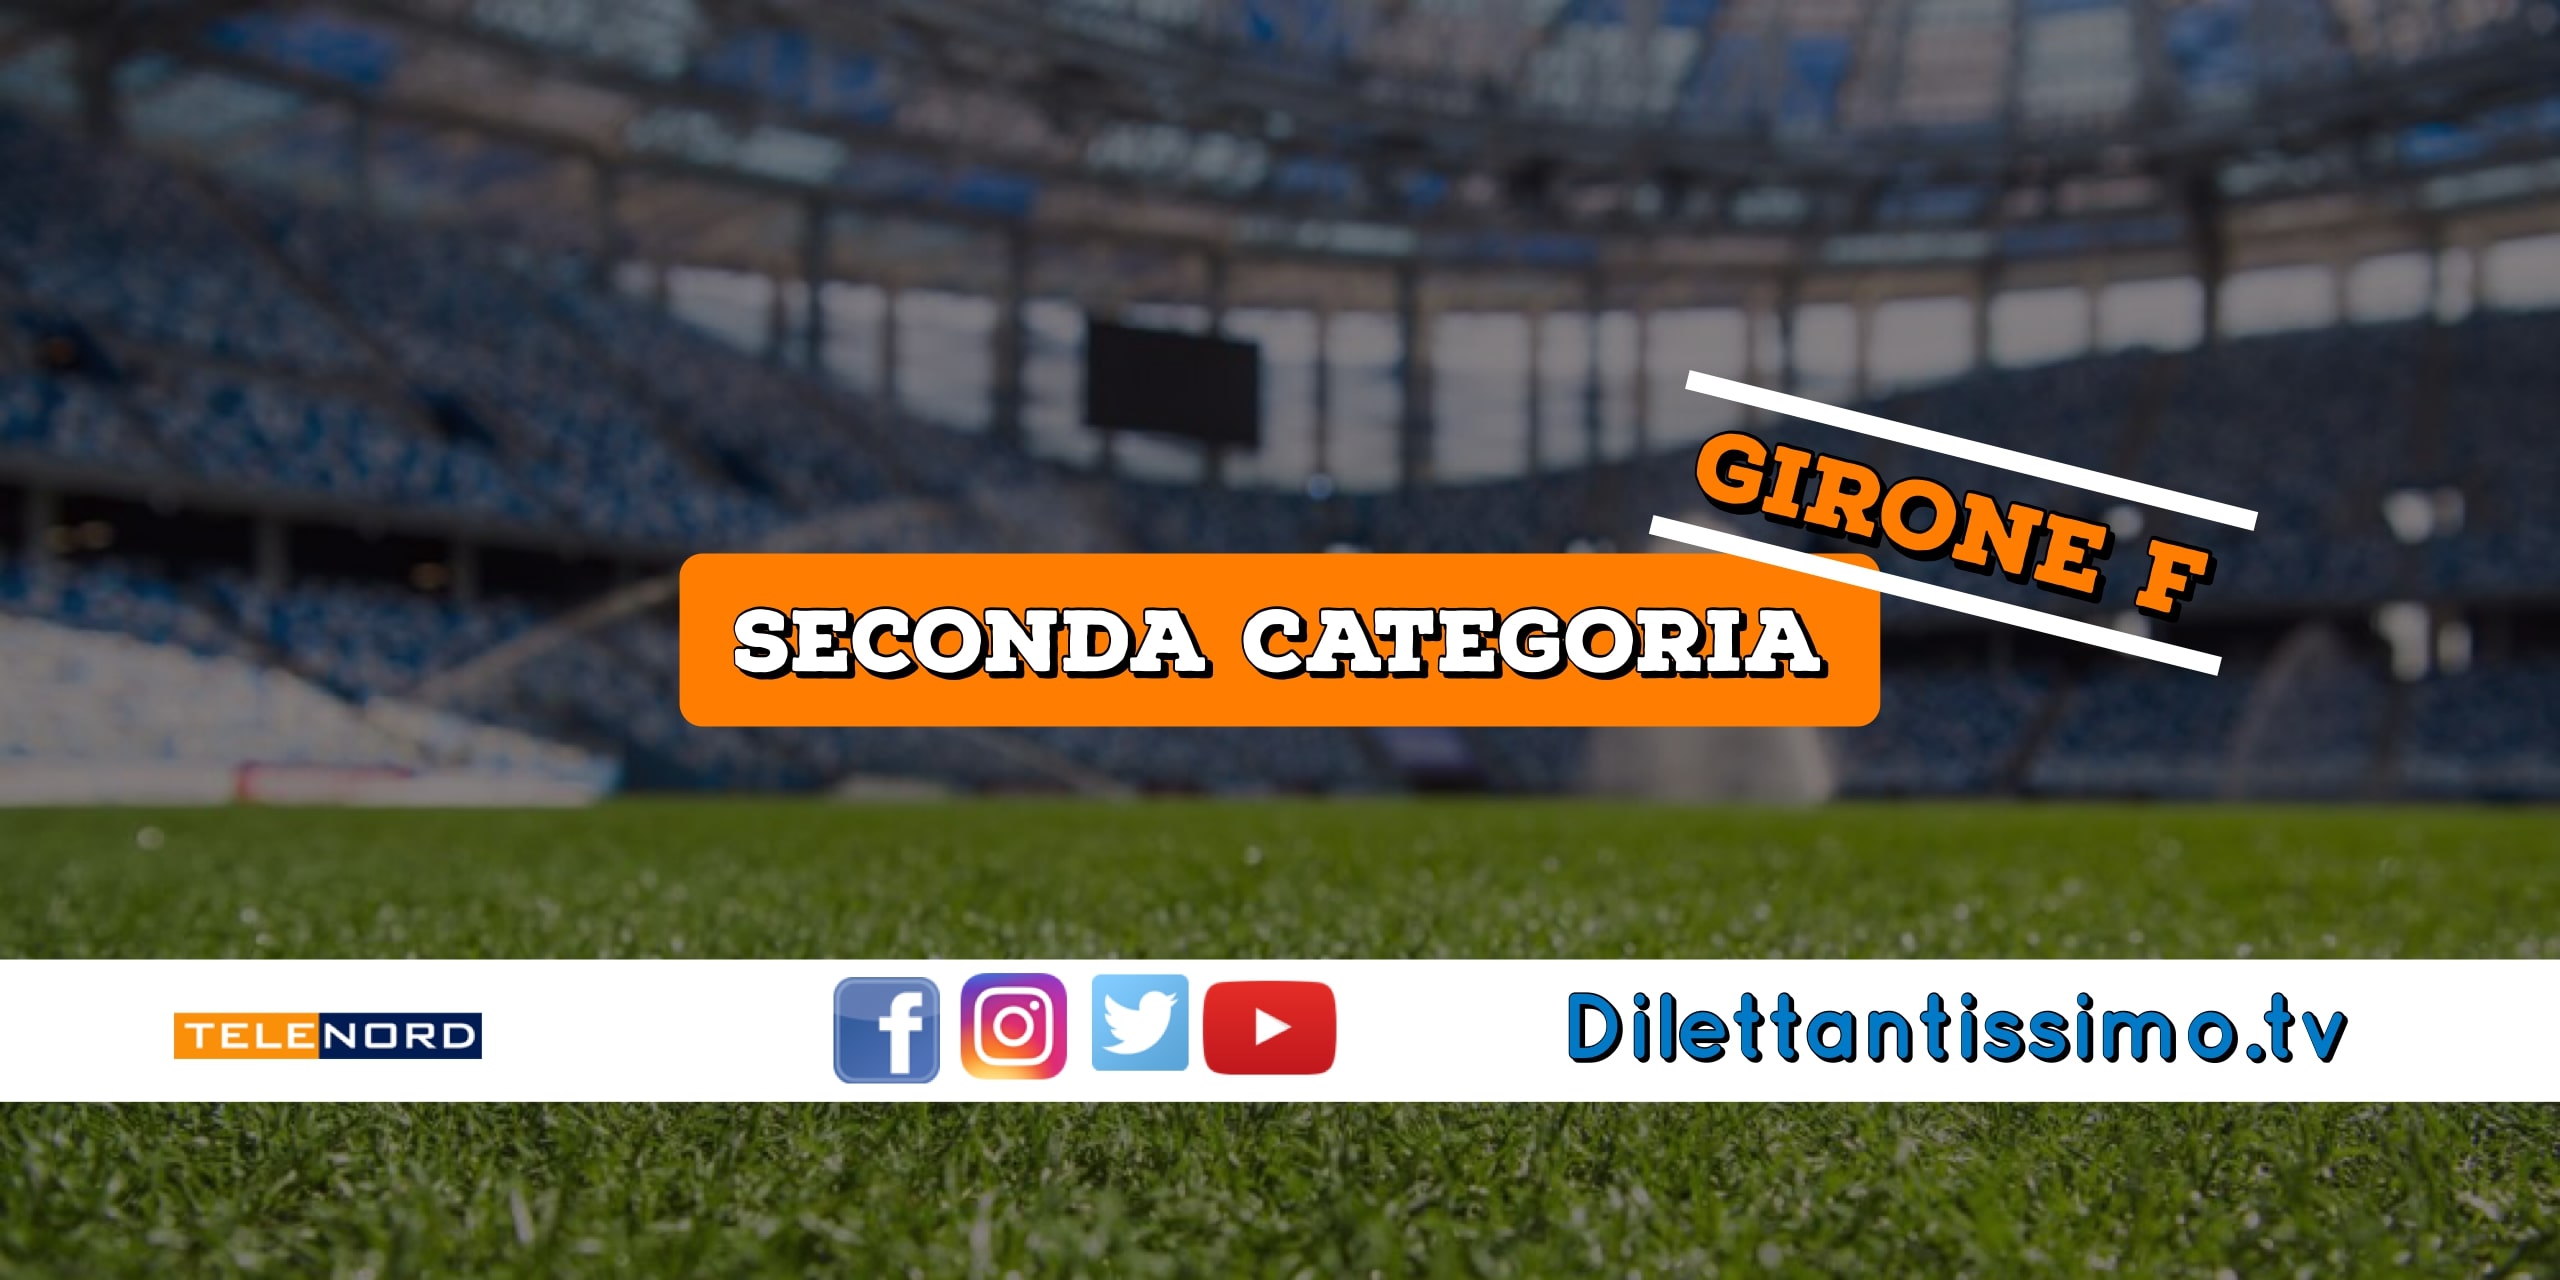 DIRETTA LIVE – SECONDA CATEGORIA GIRONE F, 5ª GIORNATA: RISULTATI E CLASSIFICA